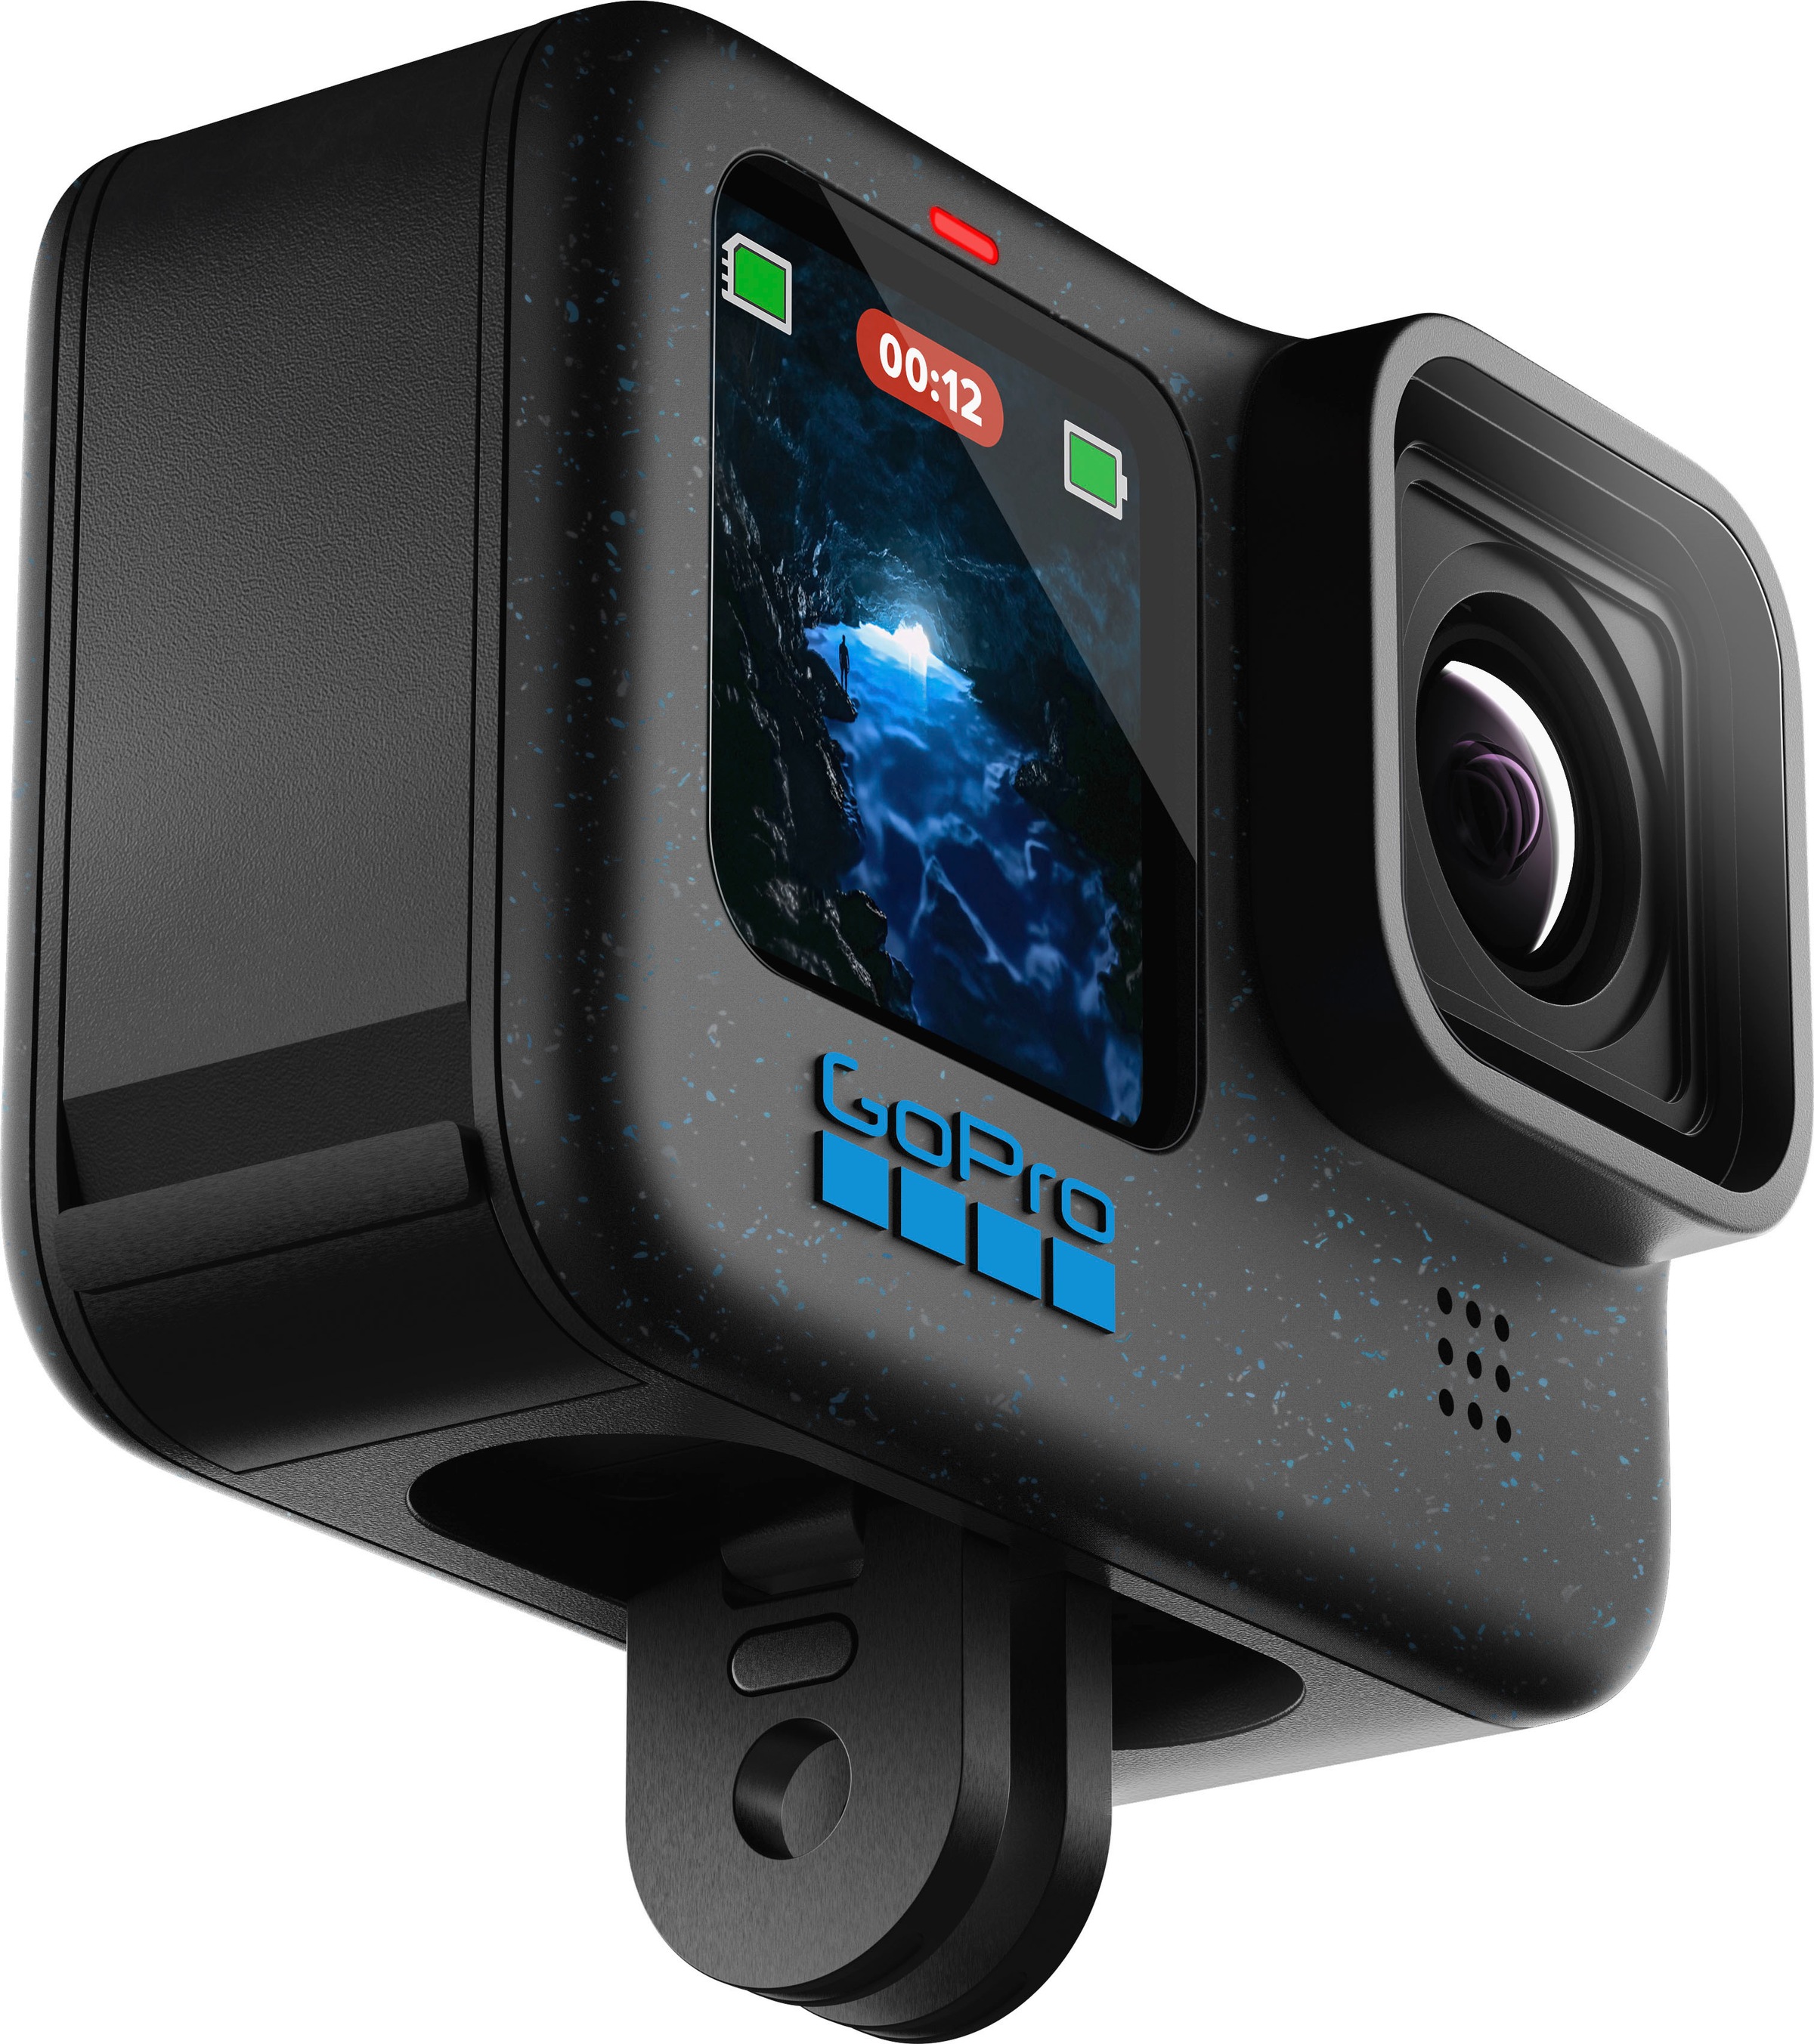 GoPro Action Cam »HERO 12«, 2 fachx opt. Zoom, 5,3K Auslösung, 156° Sichtfeld, Bildstabilisierung, HDR, wasserdicht